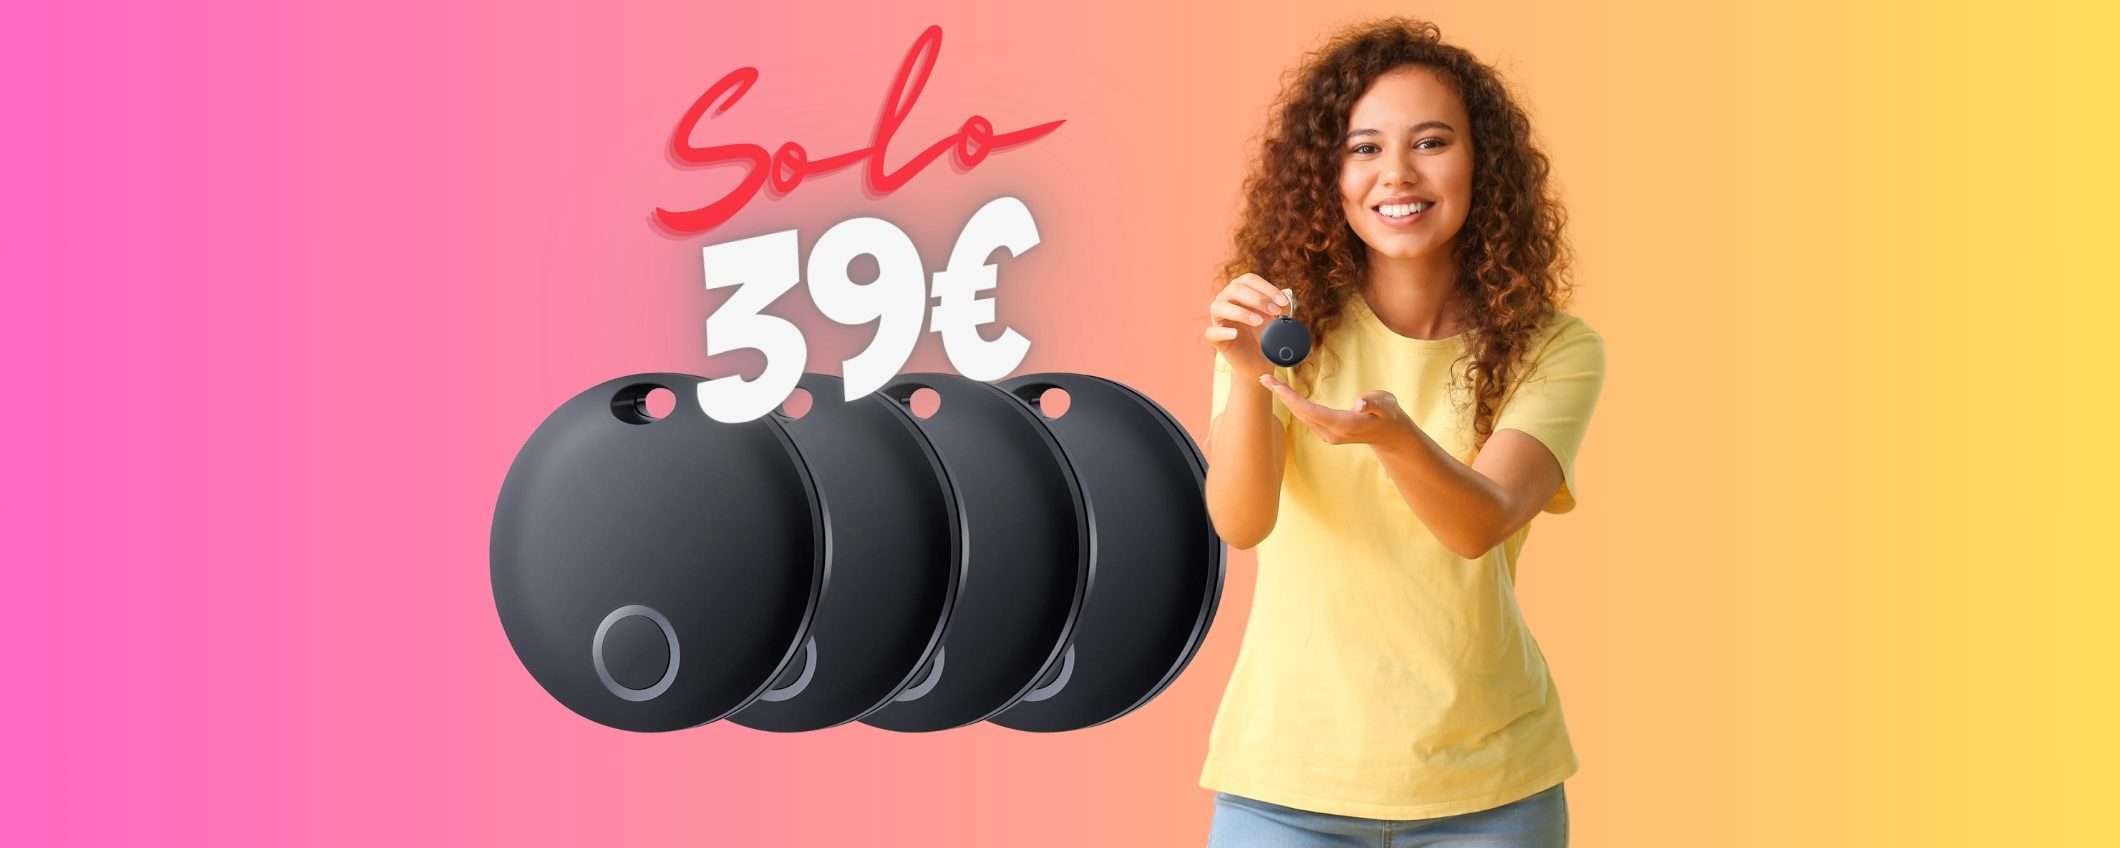 4 Smart Tag per trovare gli oggetti persi a SOLI 39€, (10€ l'uno)